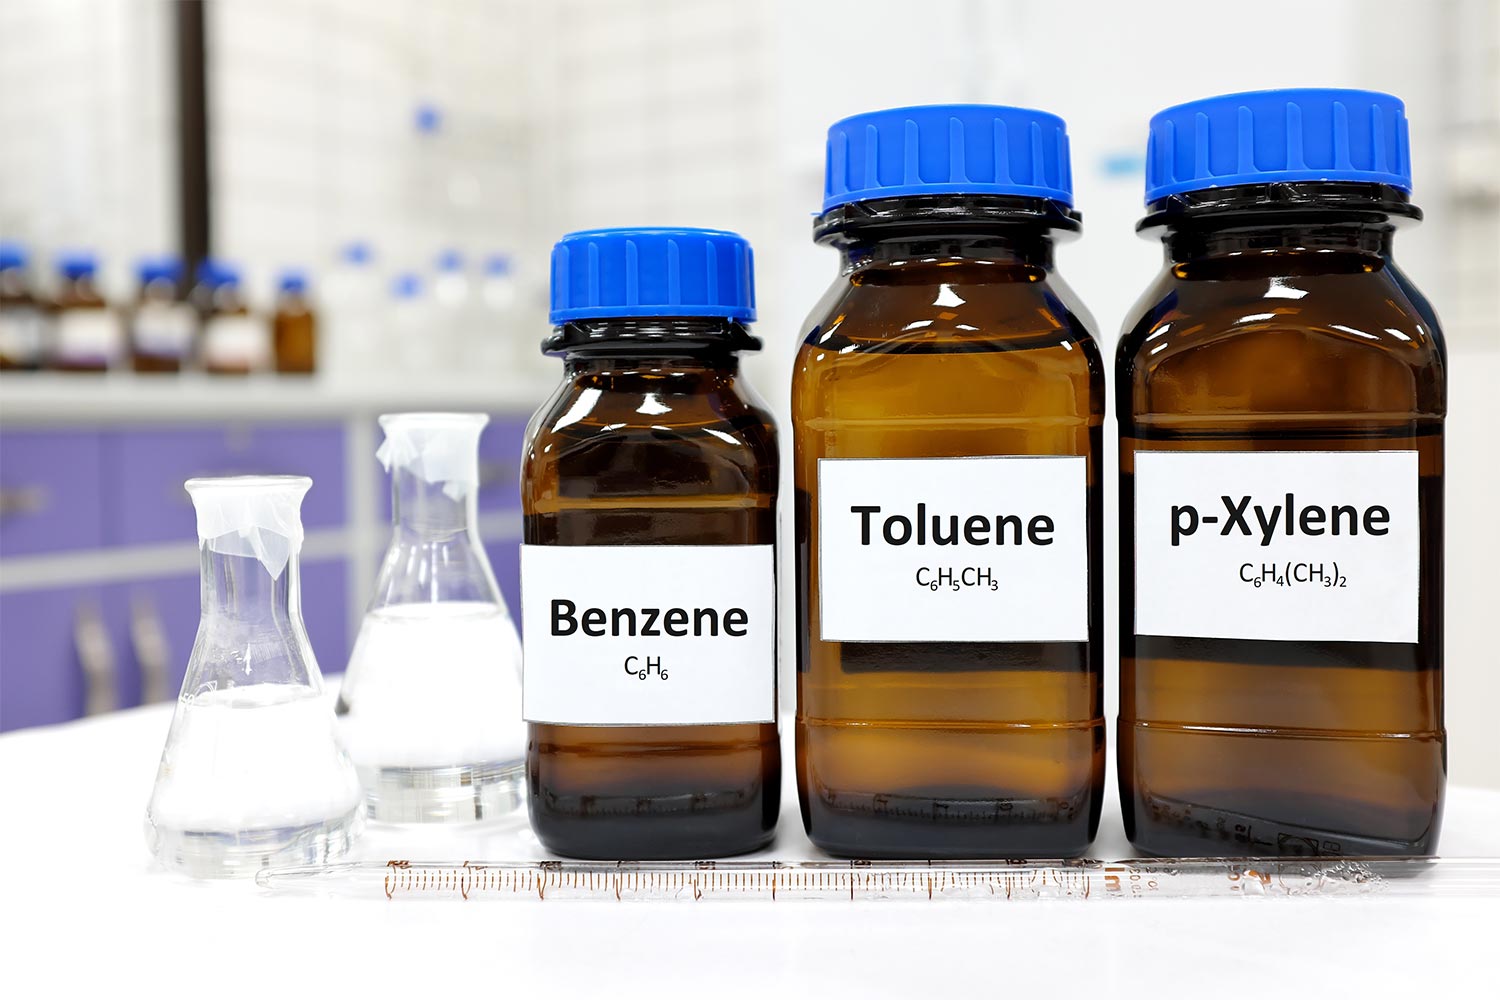 Bottles of benzene, toluene, and p-xylene